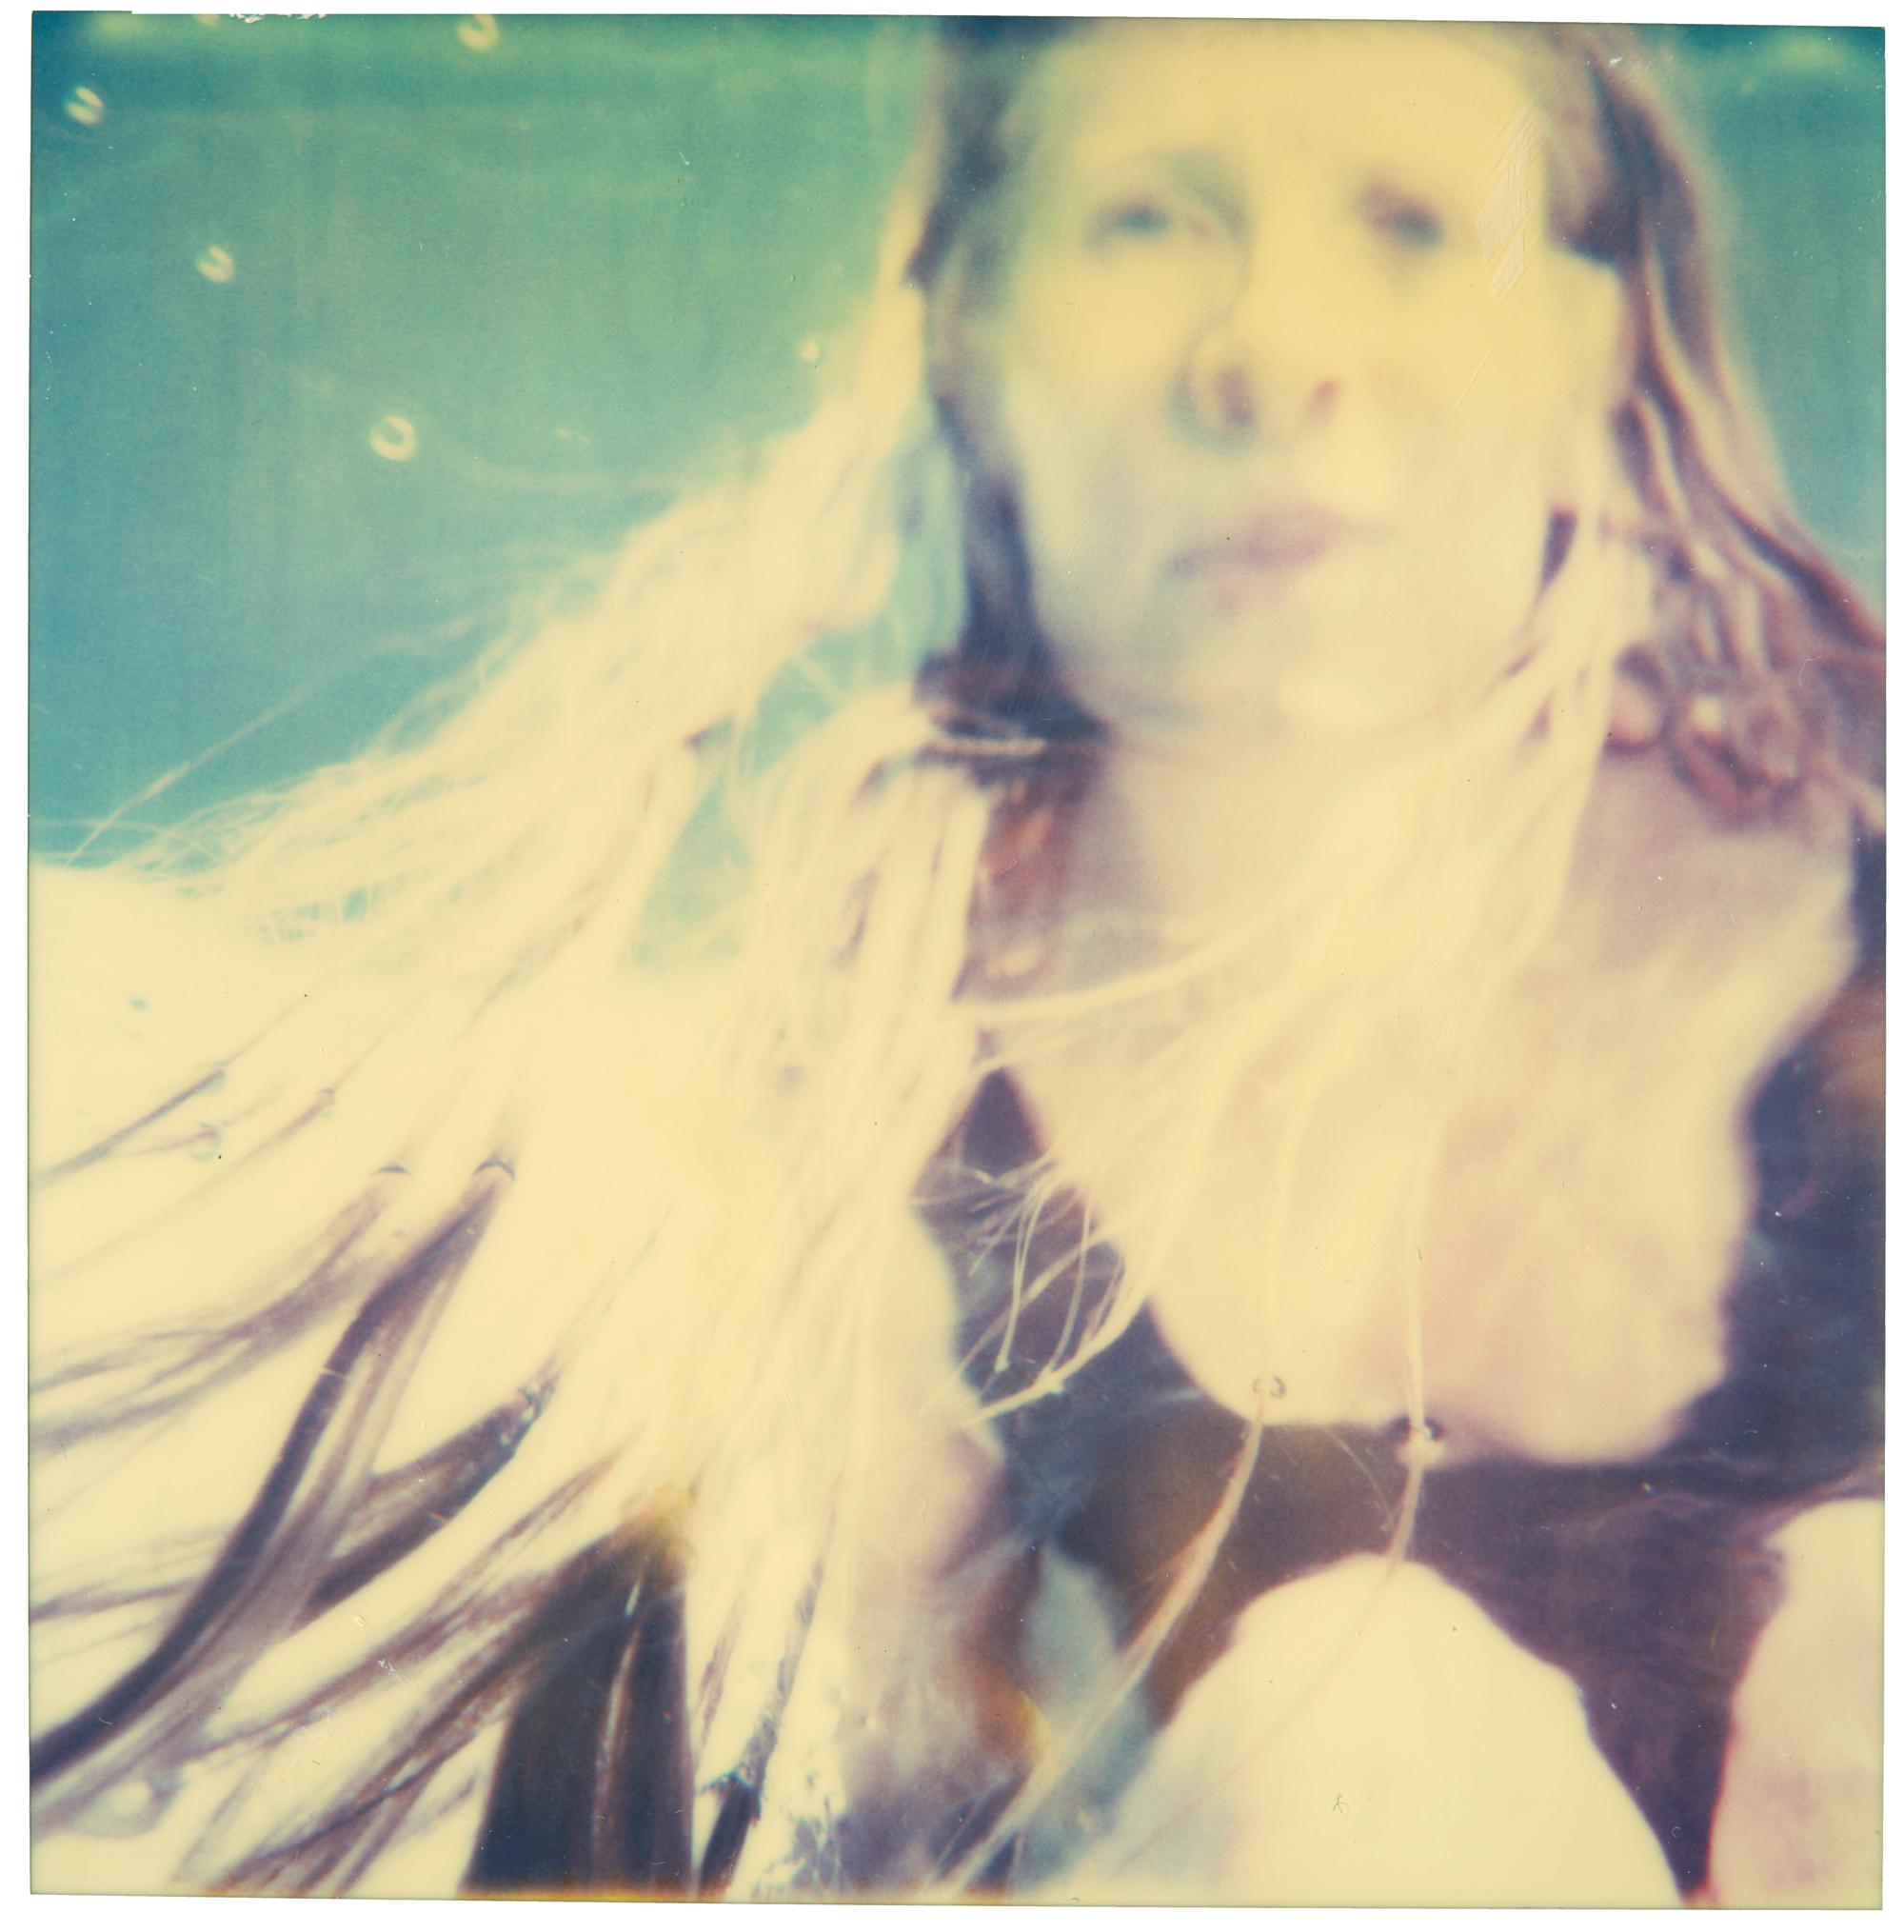 Stefanie Schneider Portrait Photograph – Under Water (Die letzte Bilderausstellung)